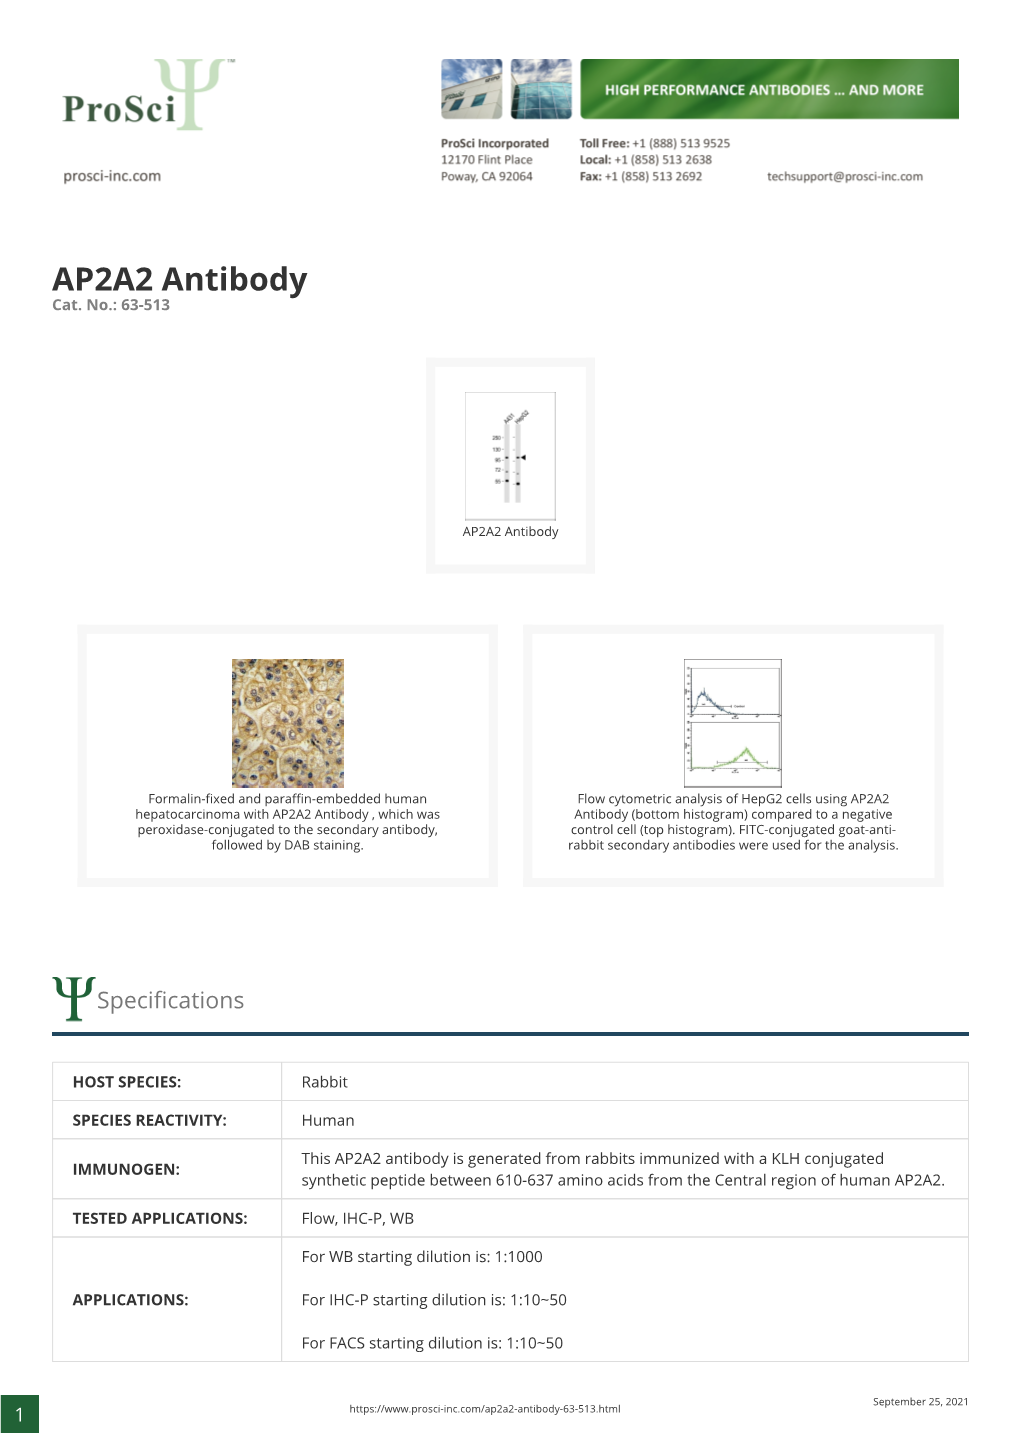 AP2A2 Antibody Cat